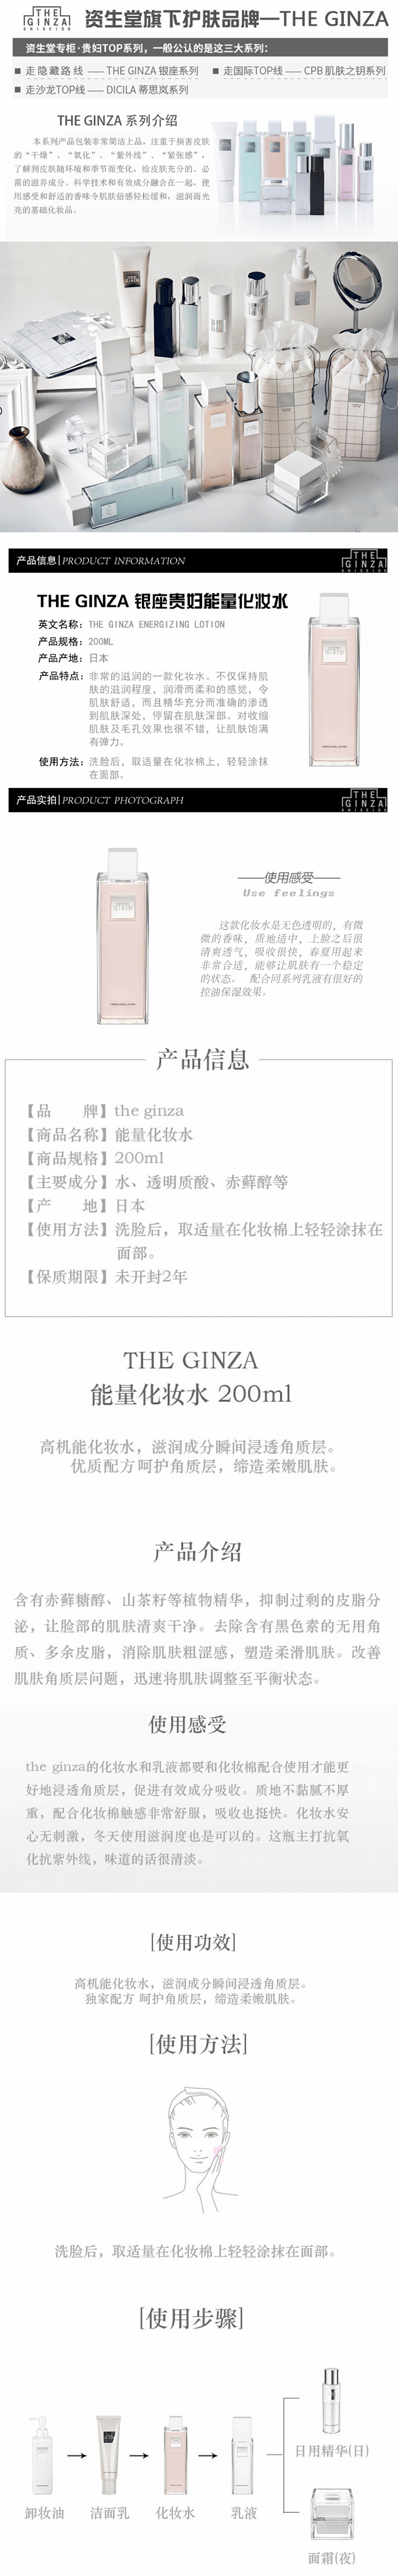 【日本直效郵件】THE GINZA 資生堂銀座 貴婦能量水 高機能化妝水 200ml